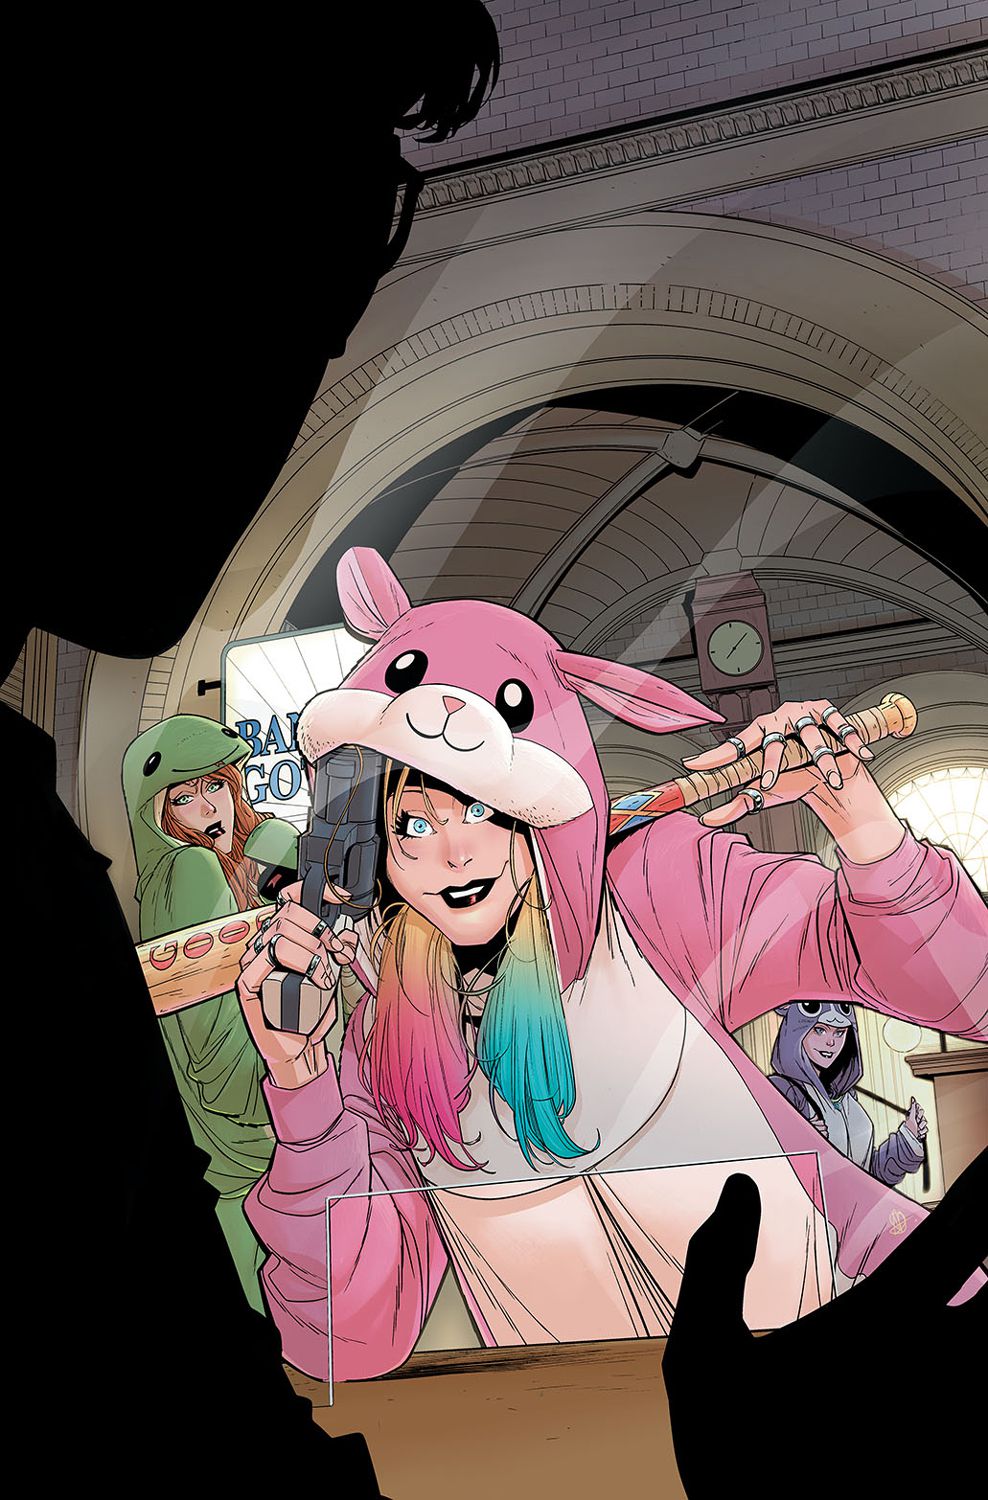 Harley Quinn, klädd i en rosa hamstertröja, lutar sig leende mot en kassadisk och håller ett basebollträ i ena handen och en pistol i den andra.  Bakom henne kan Poison Ivy och Catwoman ses i sina egna gröna och lila kläder.